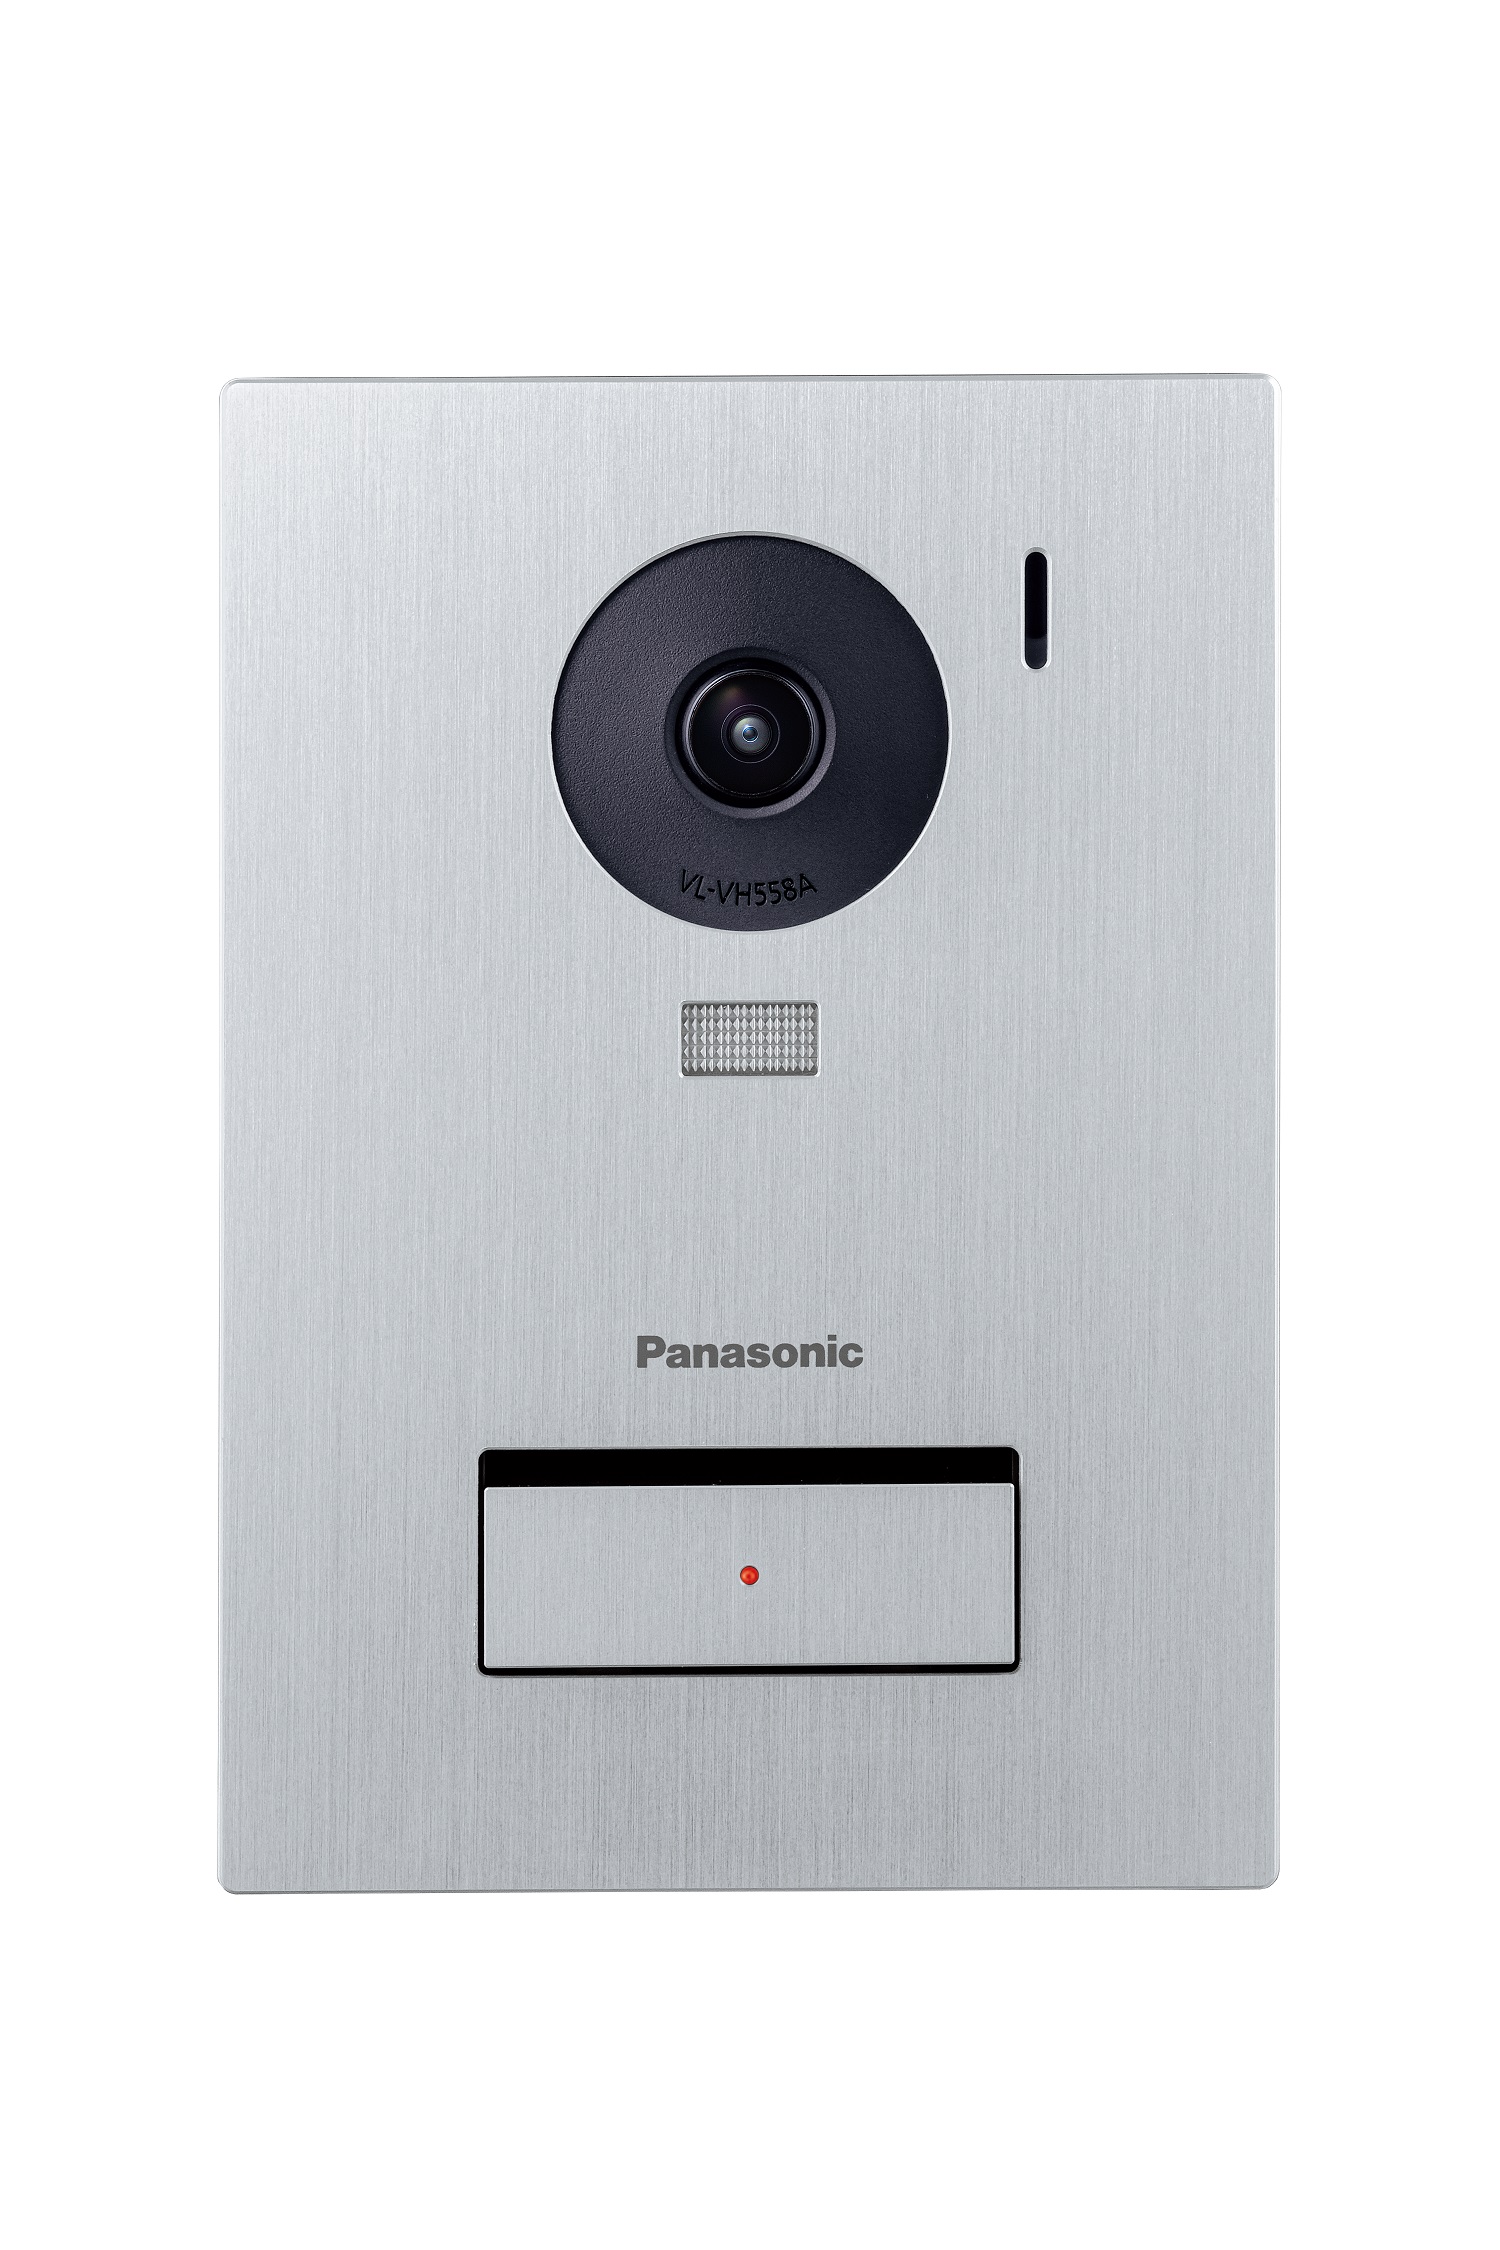 Panasonic VL-SWE710KS テレビドアホン